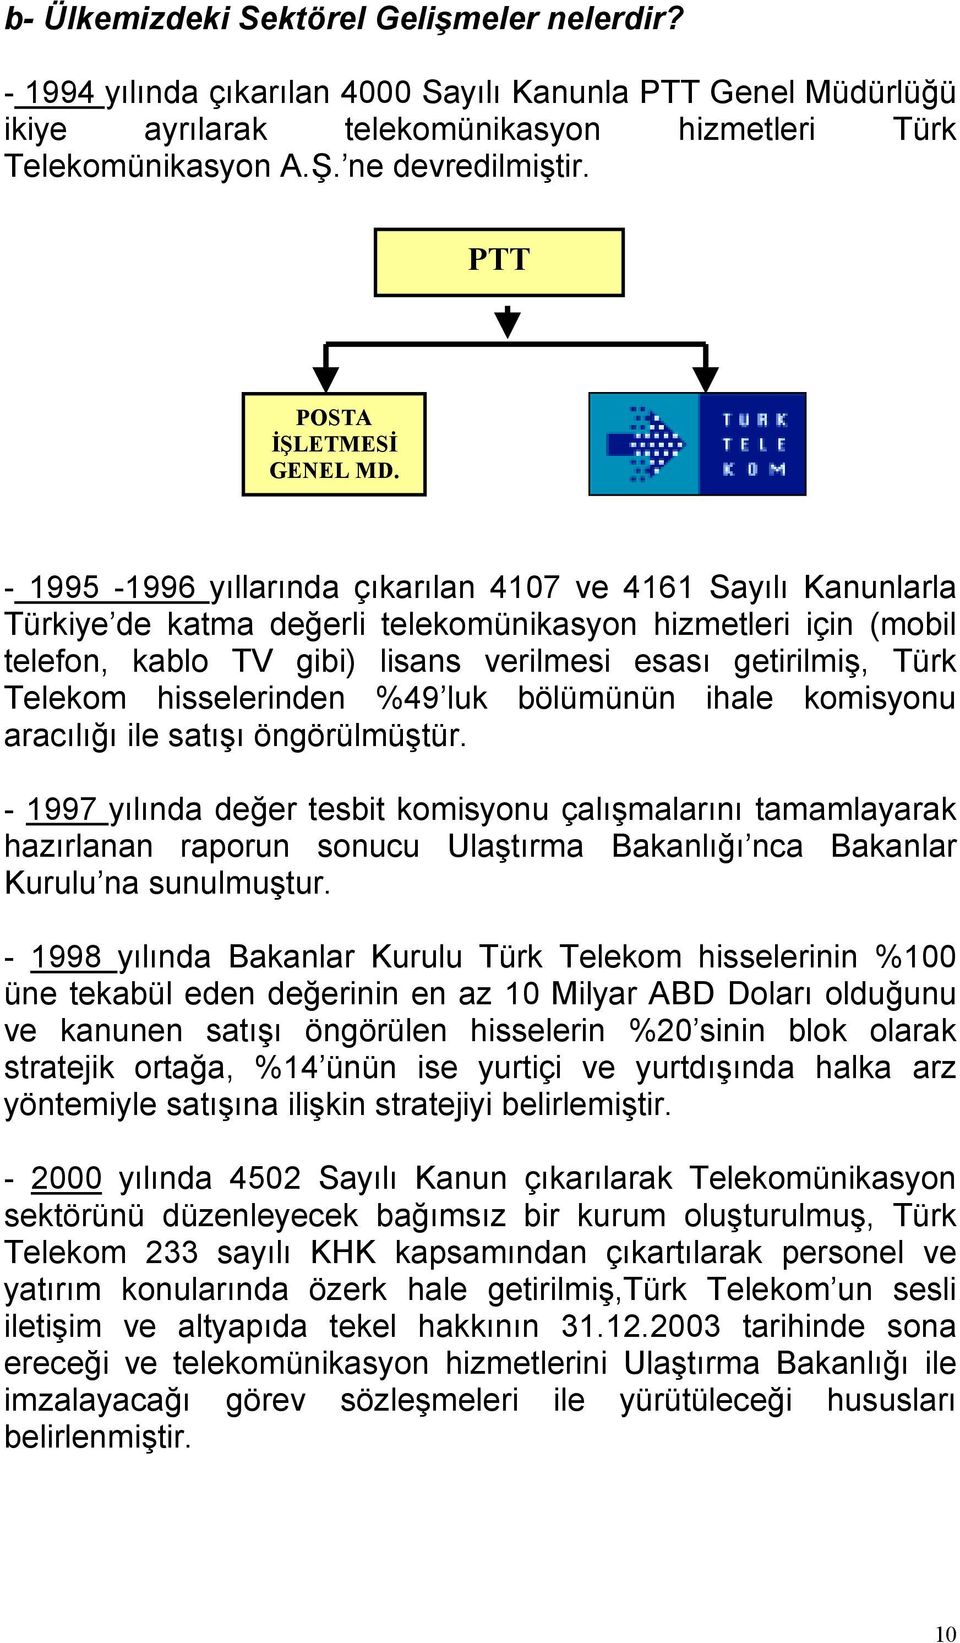 - 1995-1996 yıllarında çıkarılan 4107 ve 4161 Sayılı Kanunlarla Türkiye de katma değerli telekomünikasyon hizmetleri için (mobil telefon, kablo TV gibi) lisans verilmesi esası getirilmiş, Türk